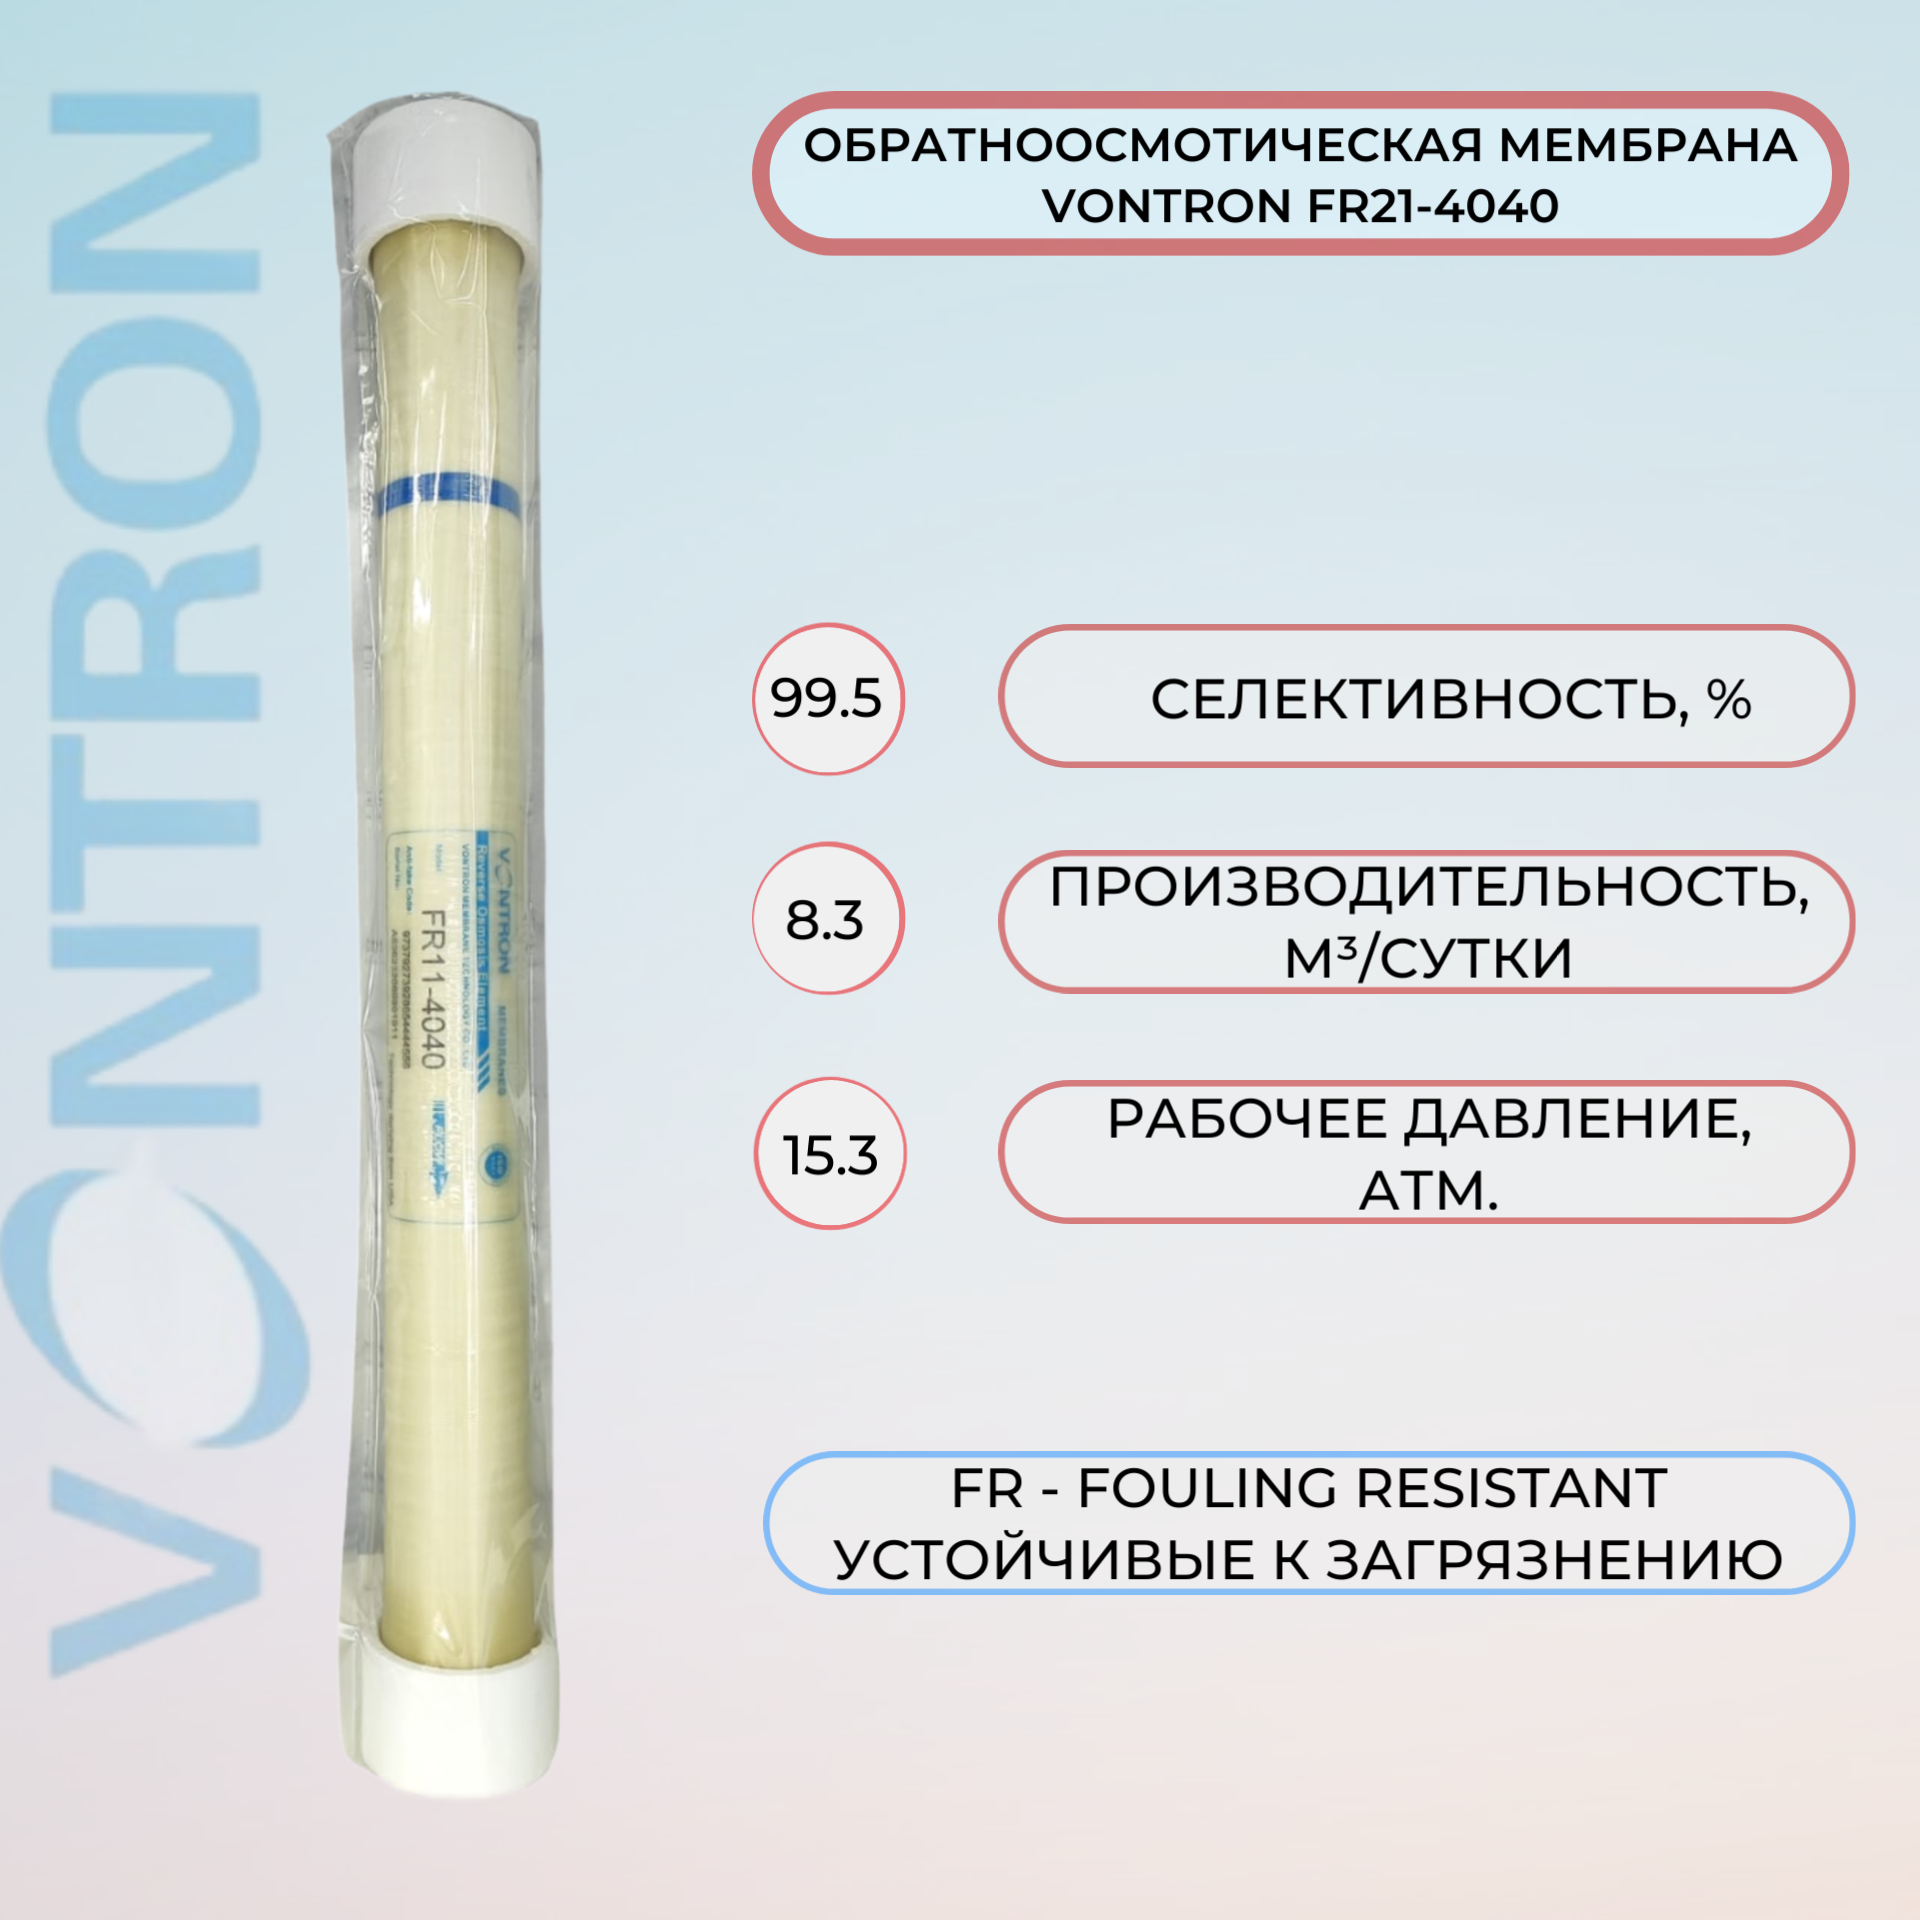 Мембрана обратного осмоса Vontron FR11-4040 8300 л/сут рабочее давление 15.3 атм.